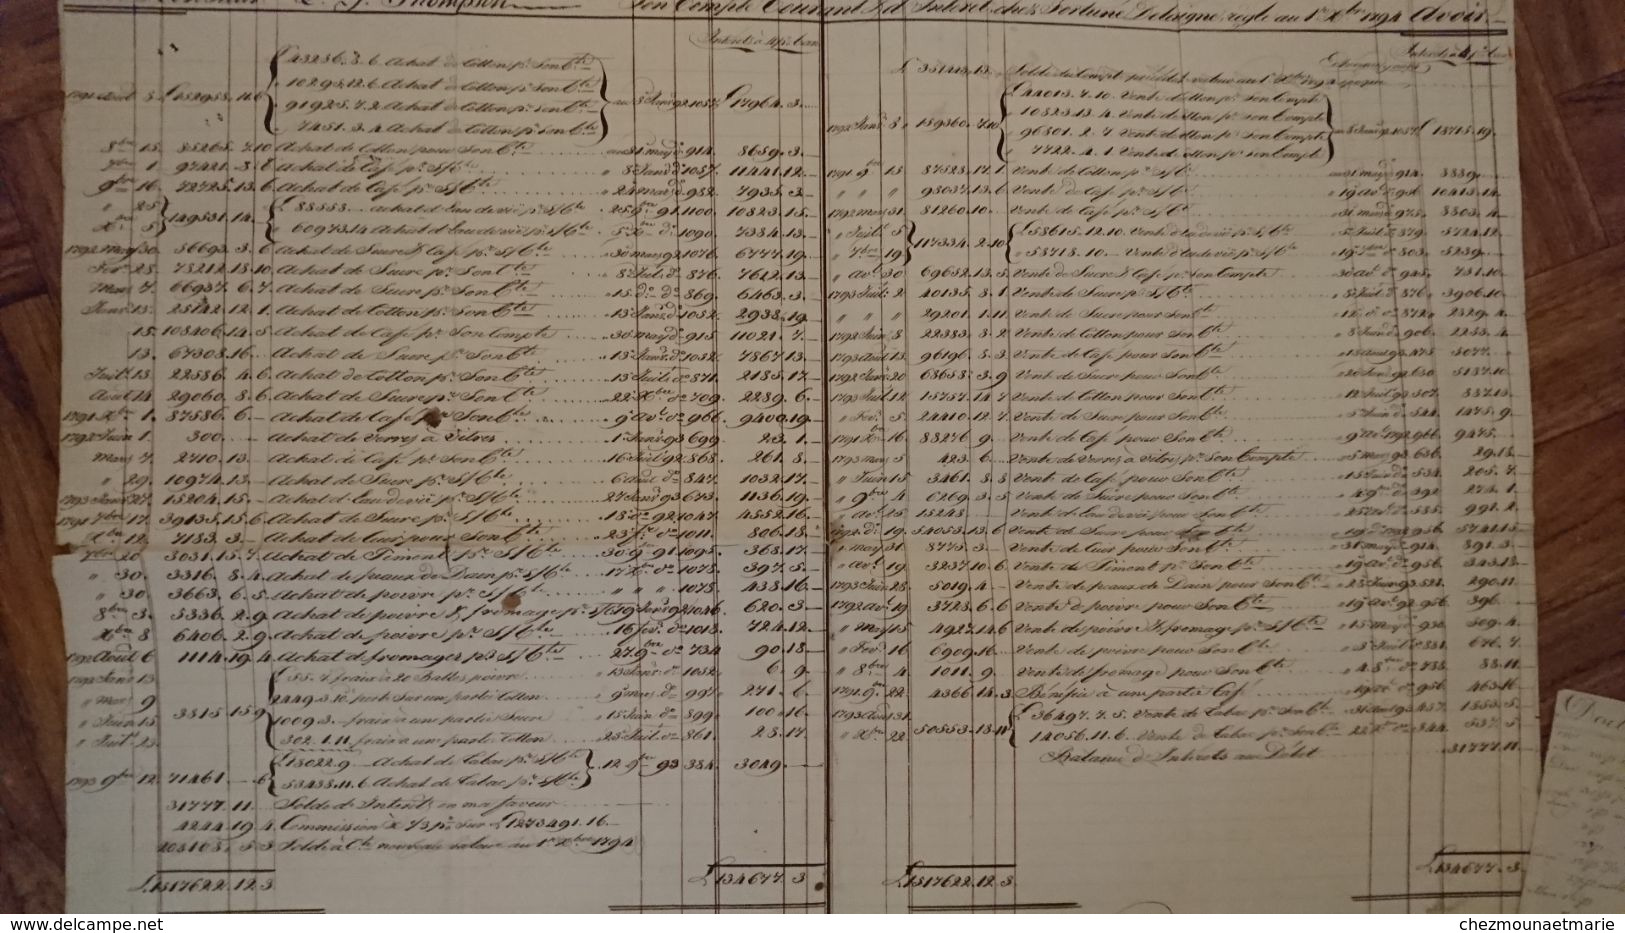 NAVIRES NEPTUNE VICTOIRE FORT DE PAIX CAMILLE CASIMIR - L.G. THOMPSON 1794-1795-1797 COMPTE CHEZ DELAVIGNE HAMBOURG - Documents Historiques